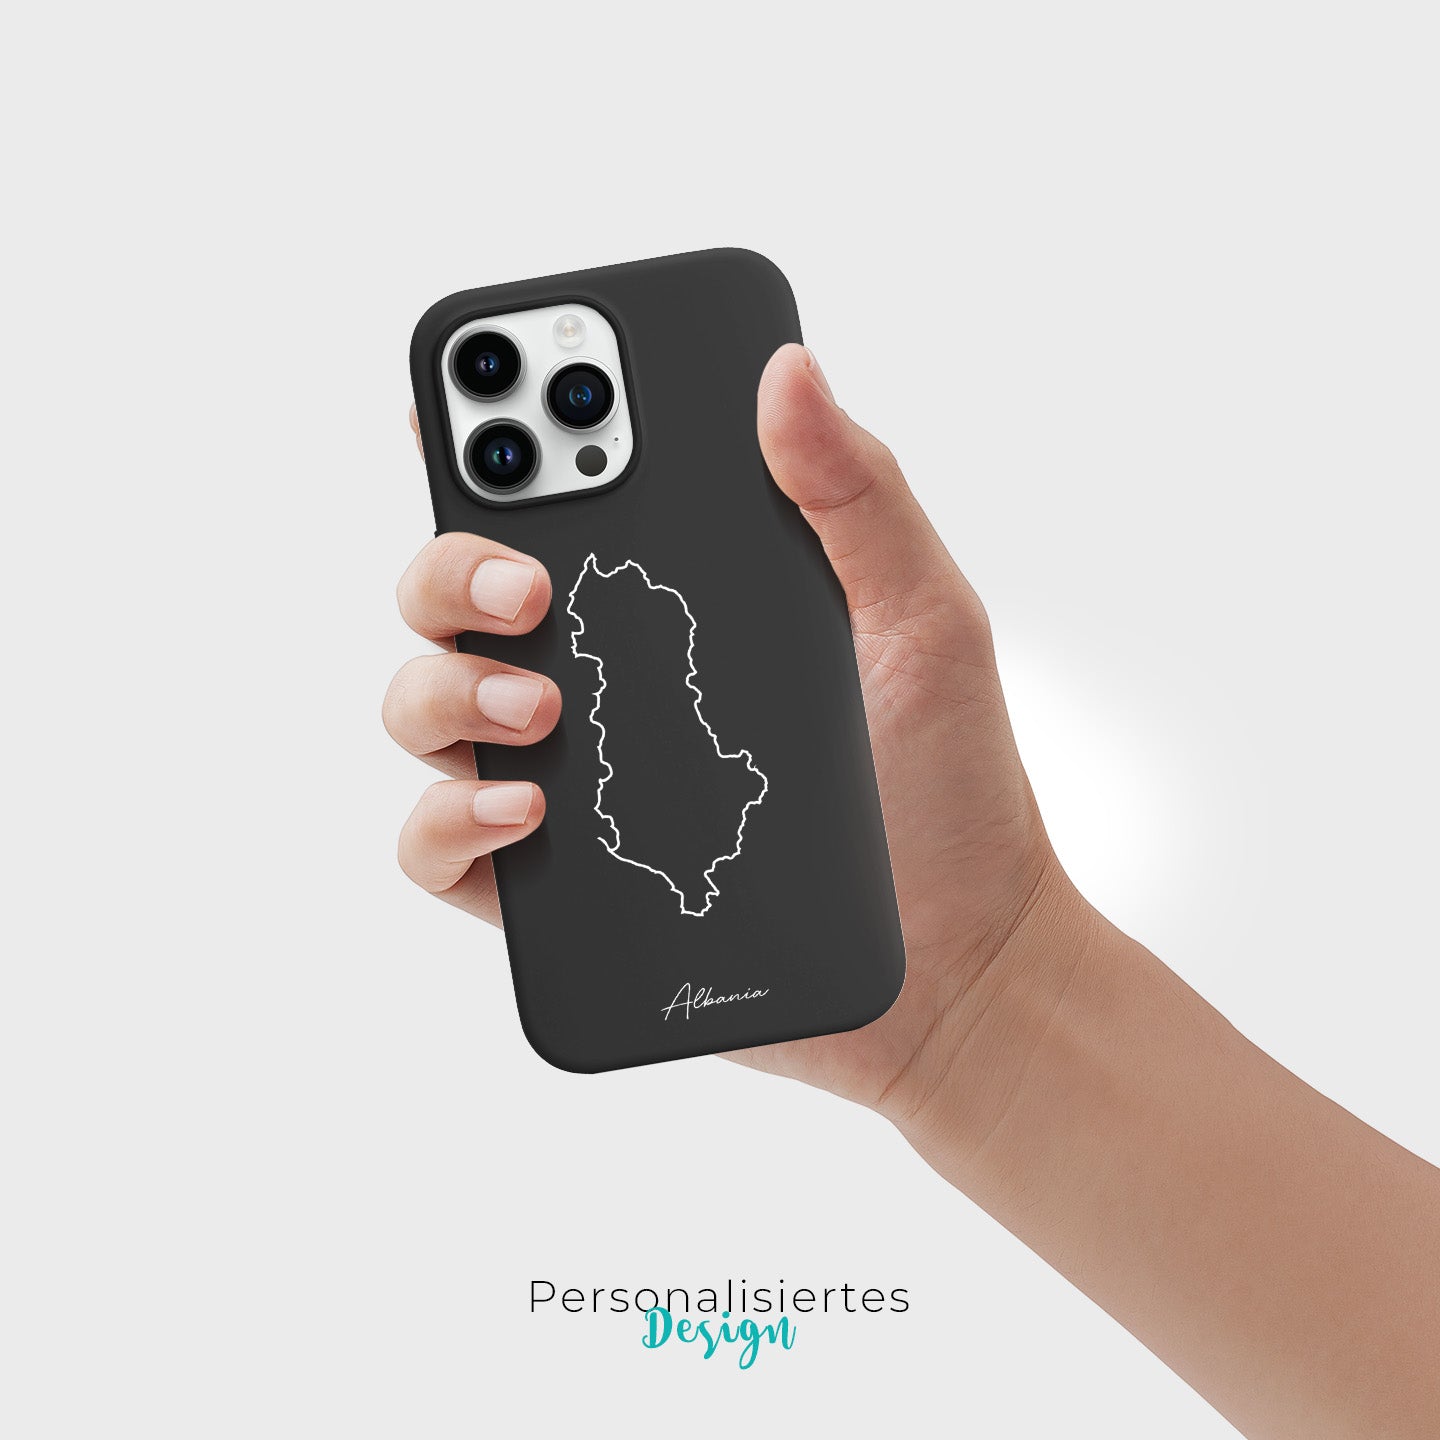 Handyhüllen mit Landkarte - Albanien - 1instaphone